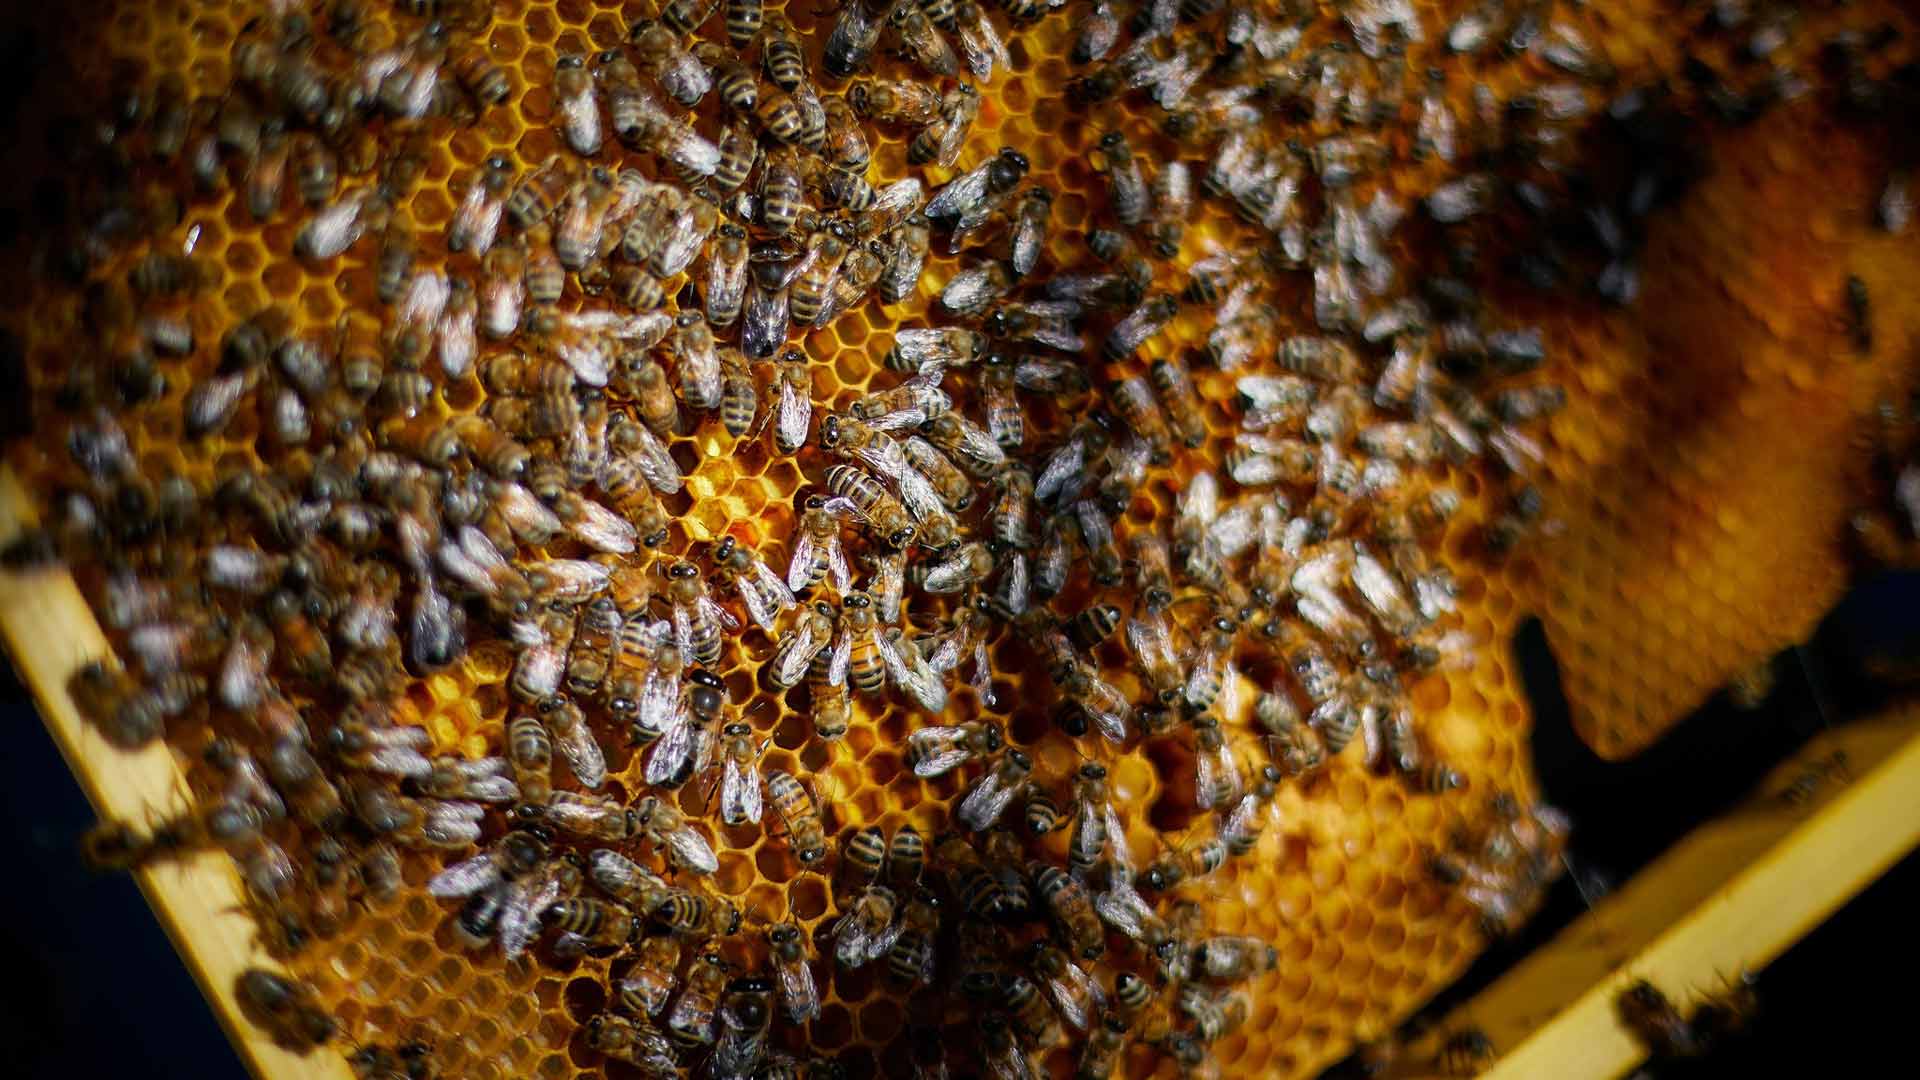 Les abeilles sauvages et les butineurs à Ungersheim